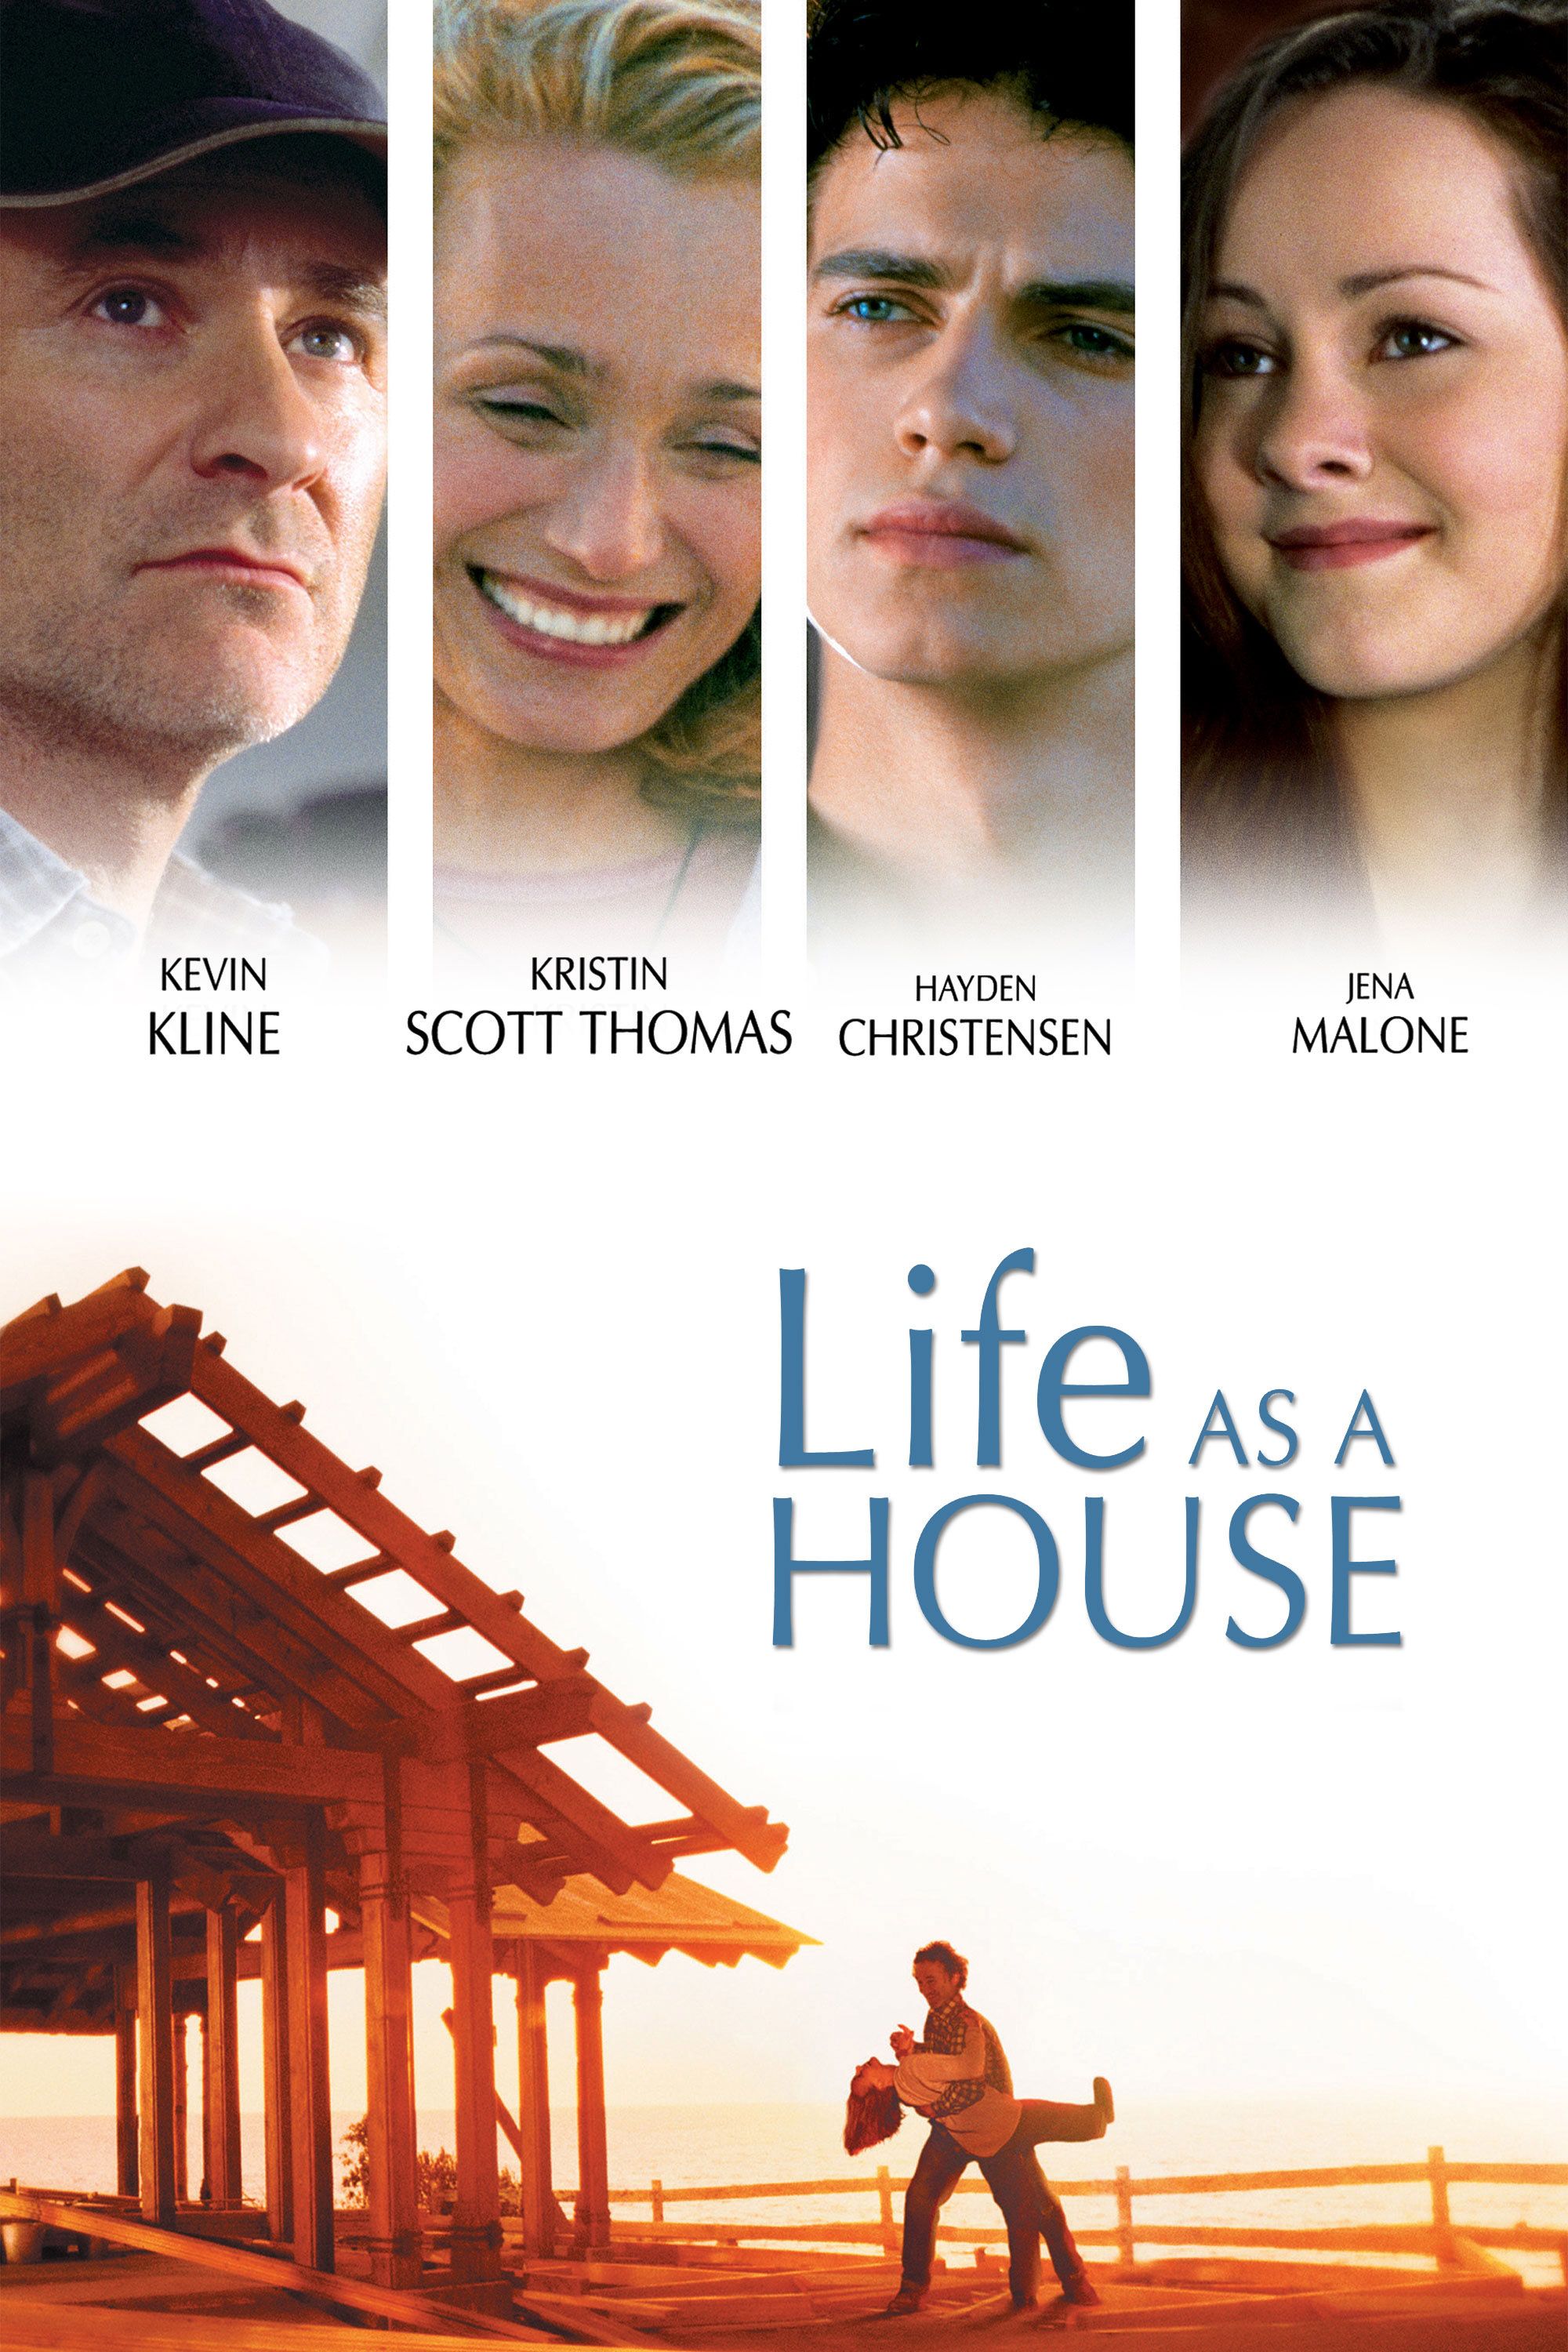 Жизнь как дом 2001. Хейден Кристенсен Life as a House. Жизнь как дом. Постеры к фильму жизнь как дом.